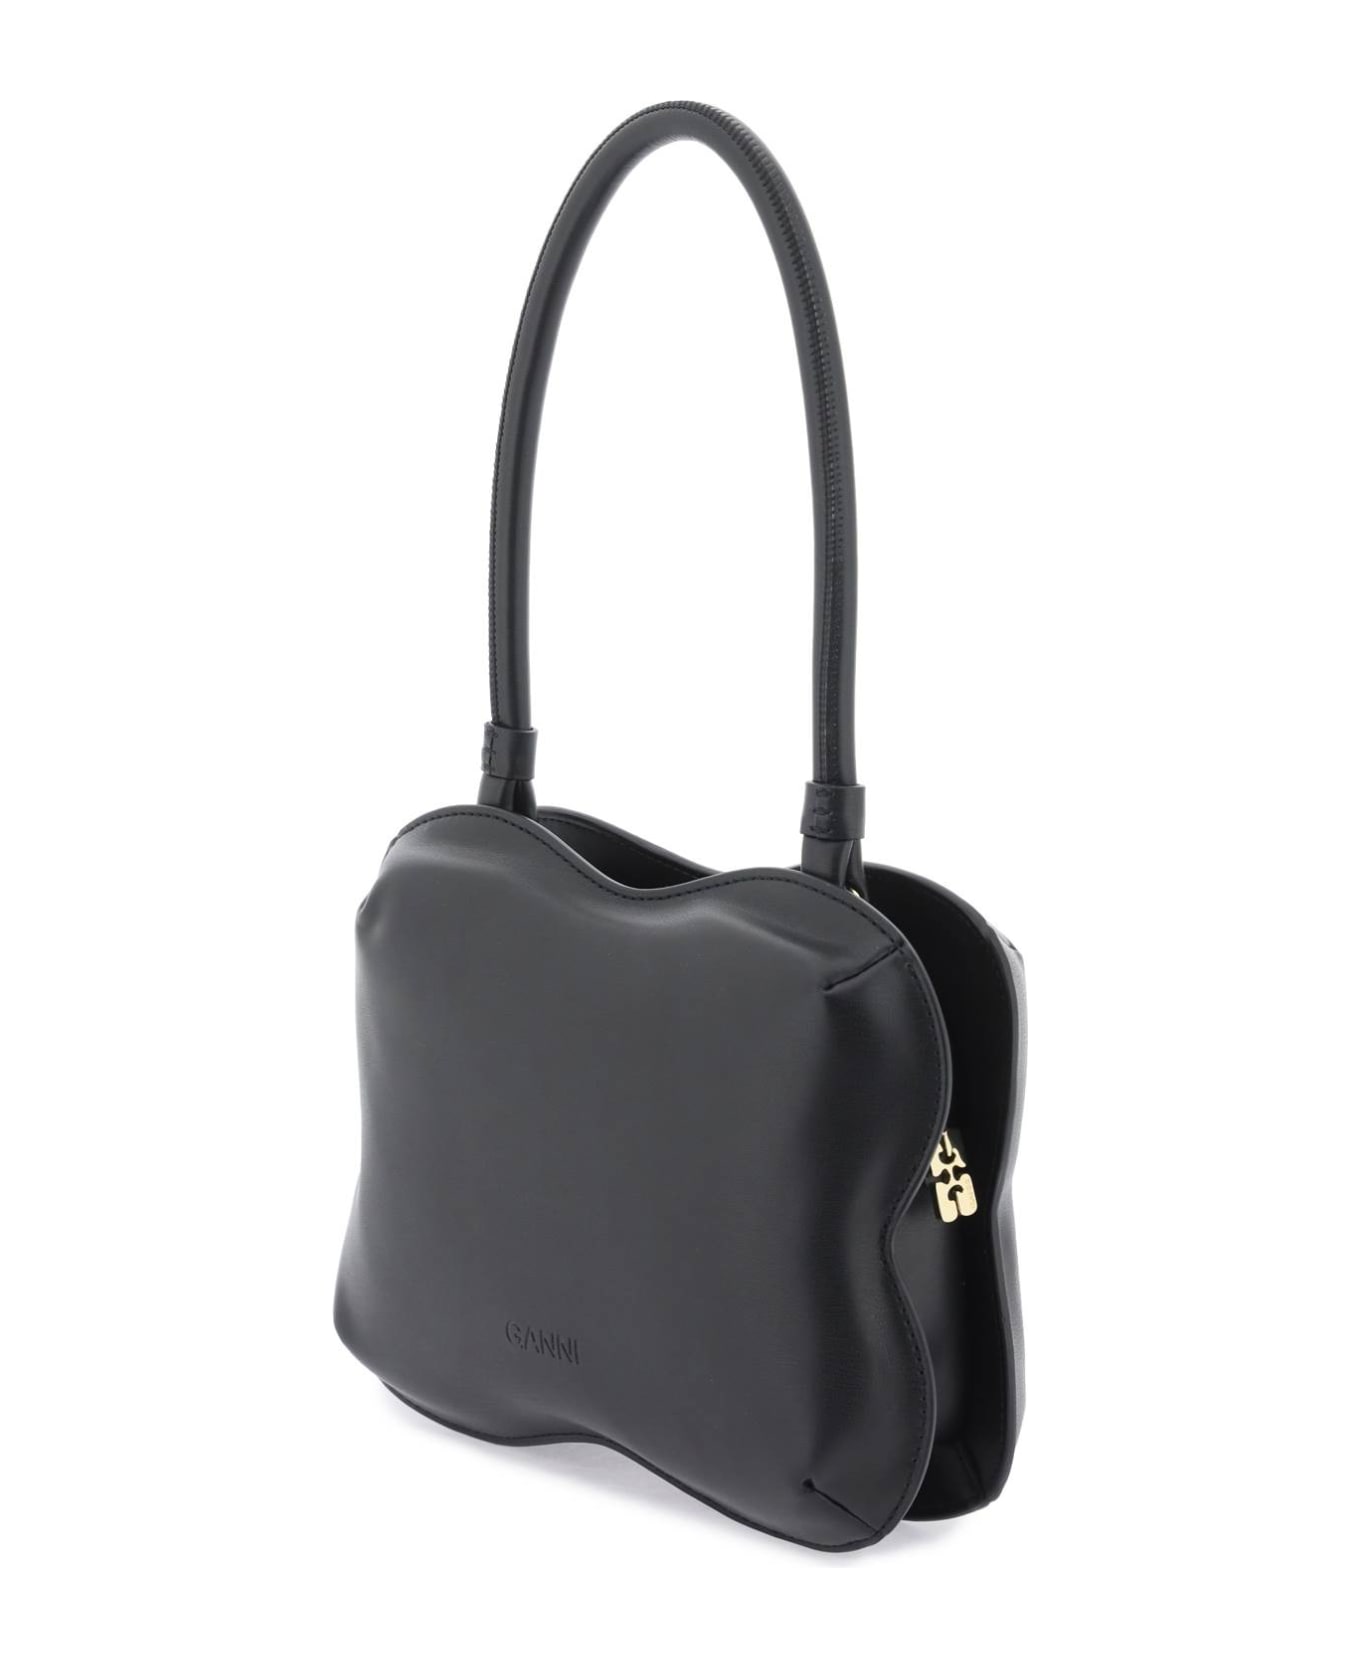 Ganni Butterfly Handbag - BLACK (Black)